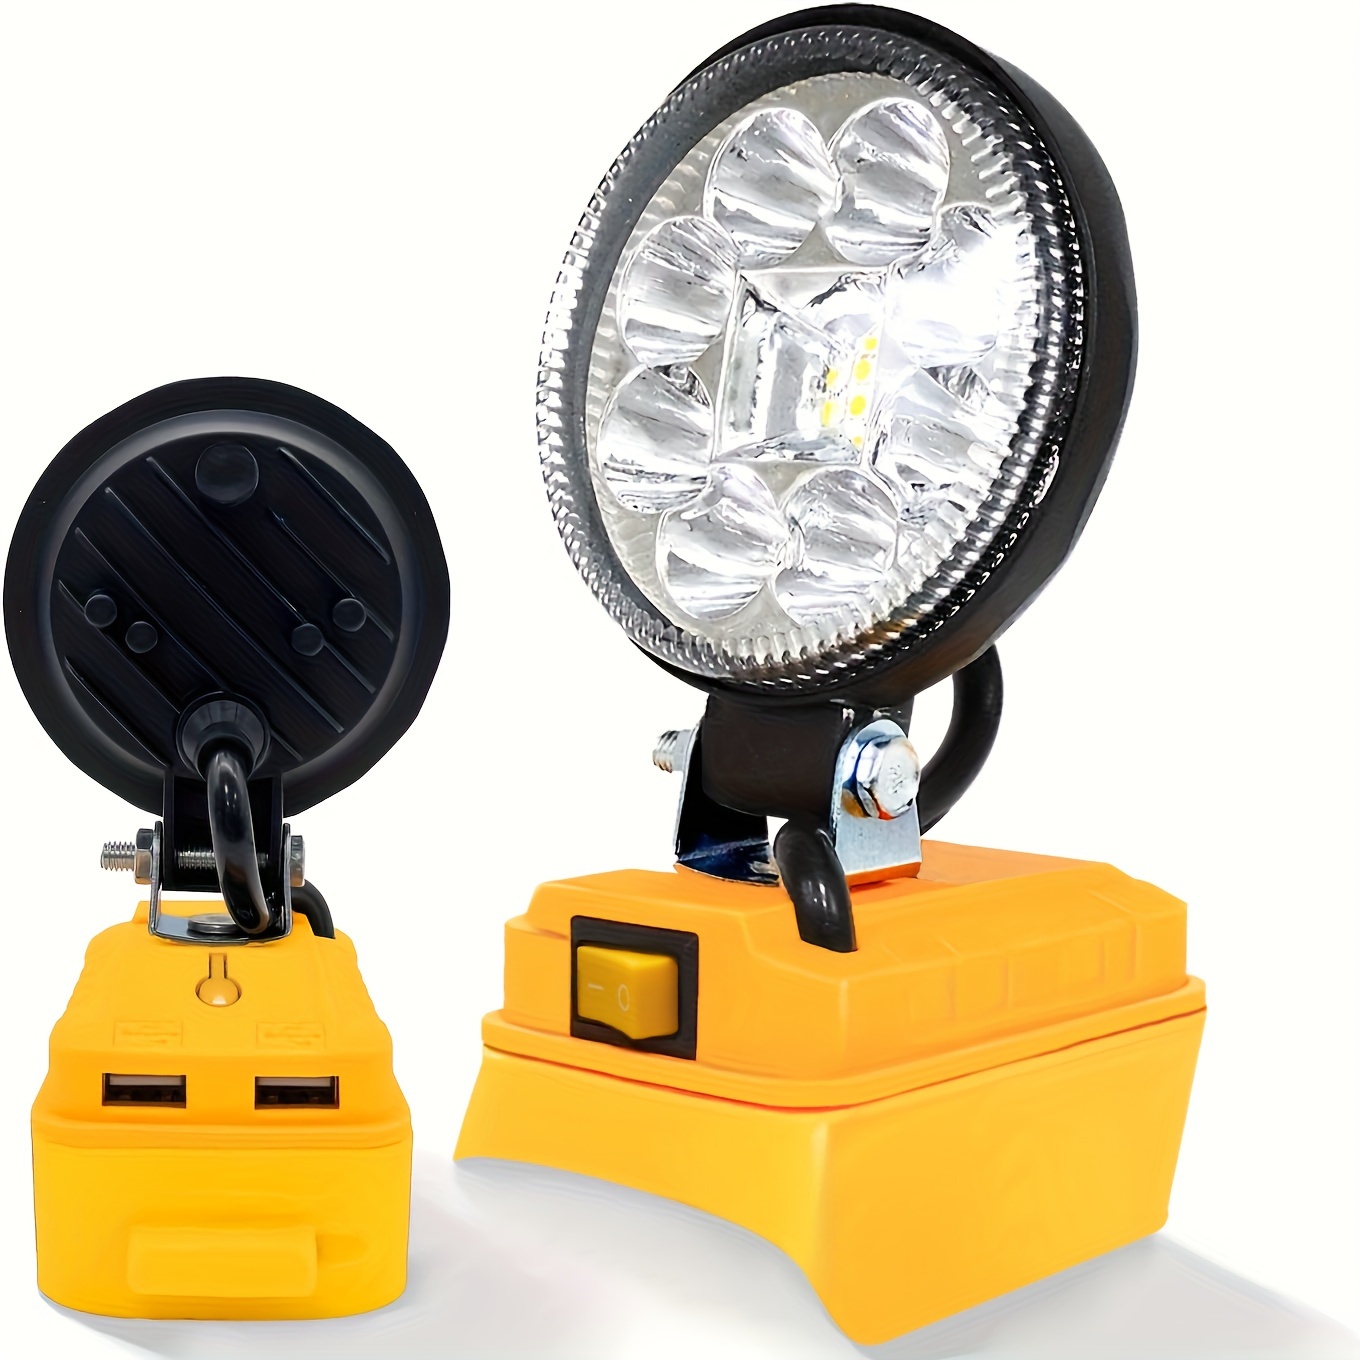 Projecteur LED Rechargeable Lampe Chantier Solaire 60W, 4 modes